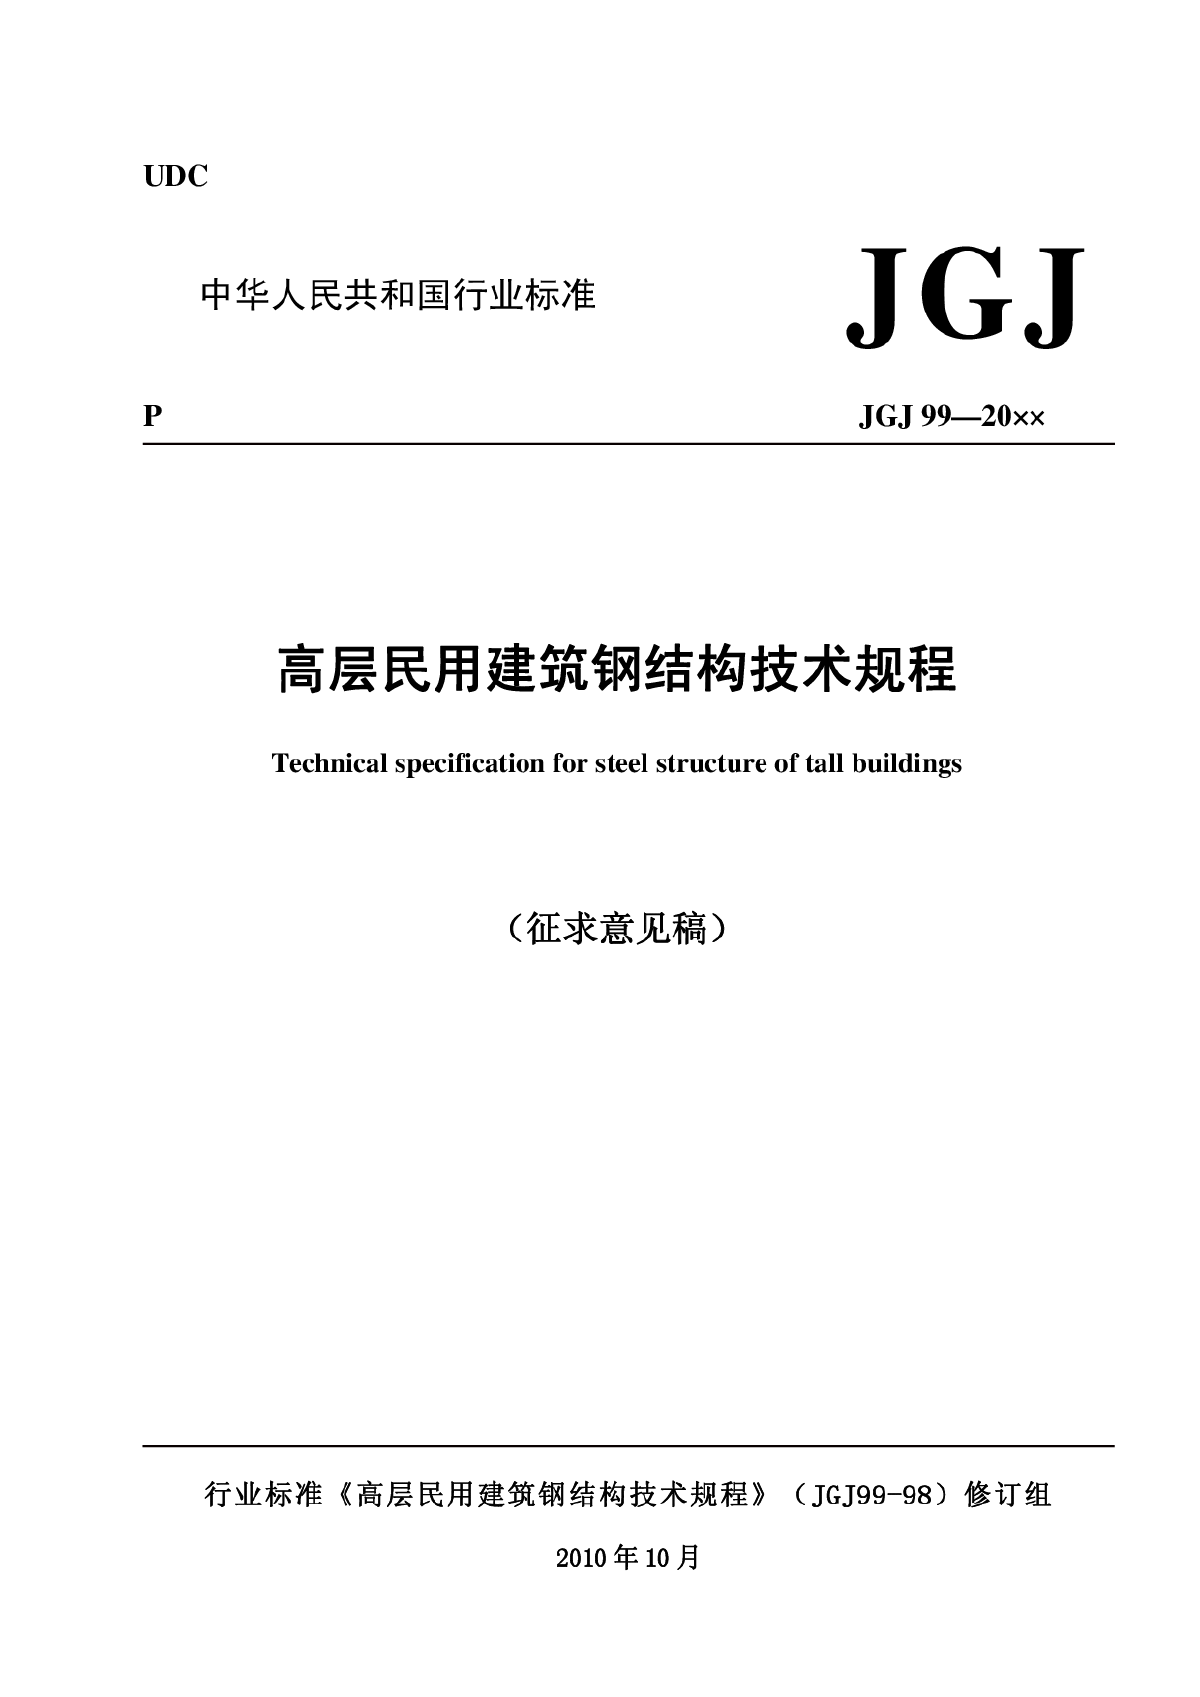 JGJ99民用高层钢结构规范（征求意见稿）